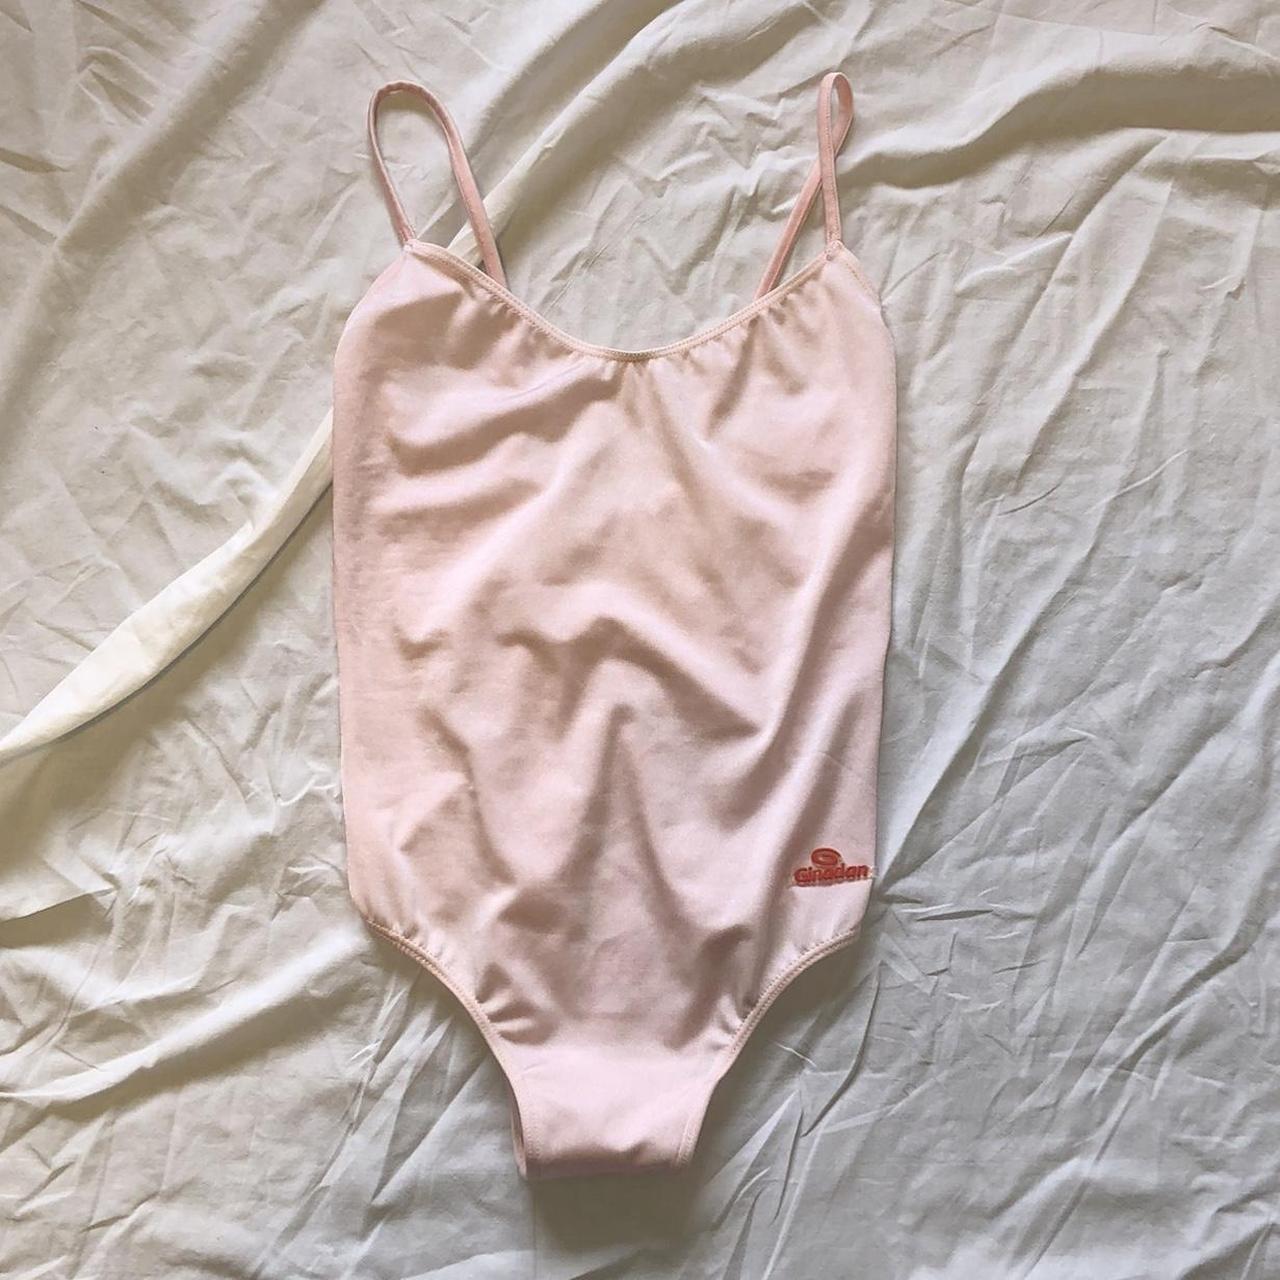 vintage baby pink bodysuit XS - S Made in Spain 🇪🇸... - Depop